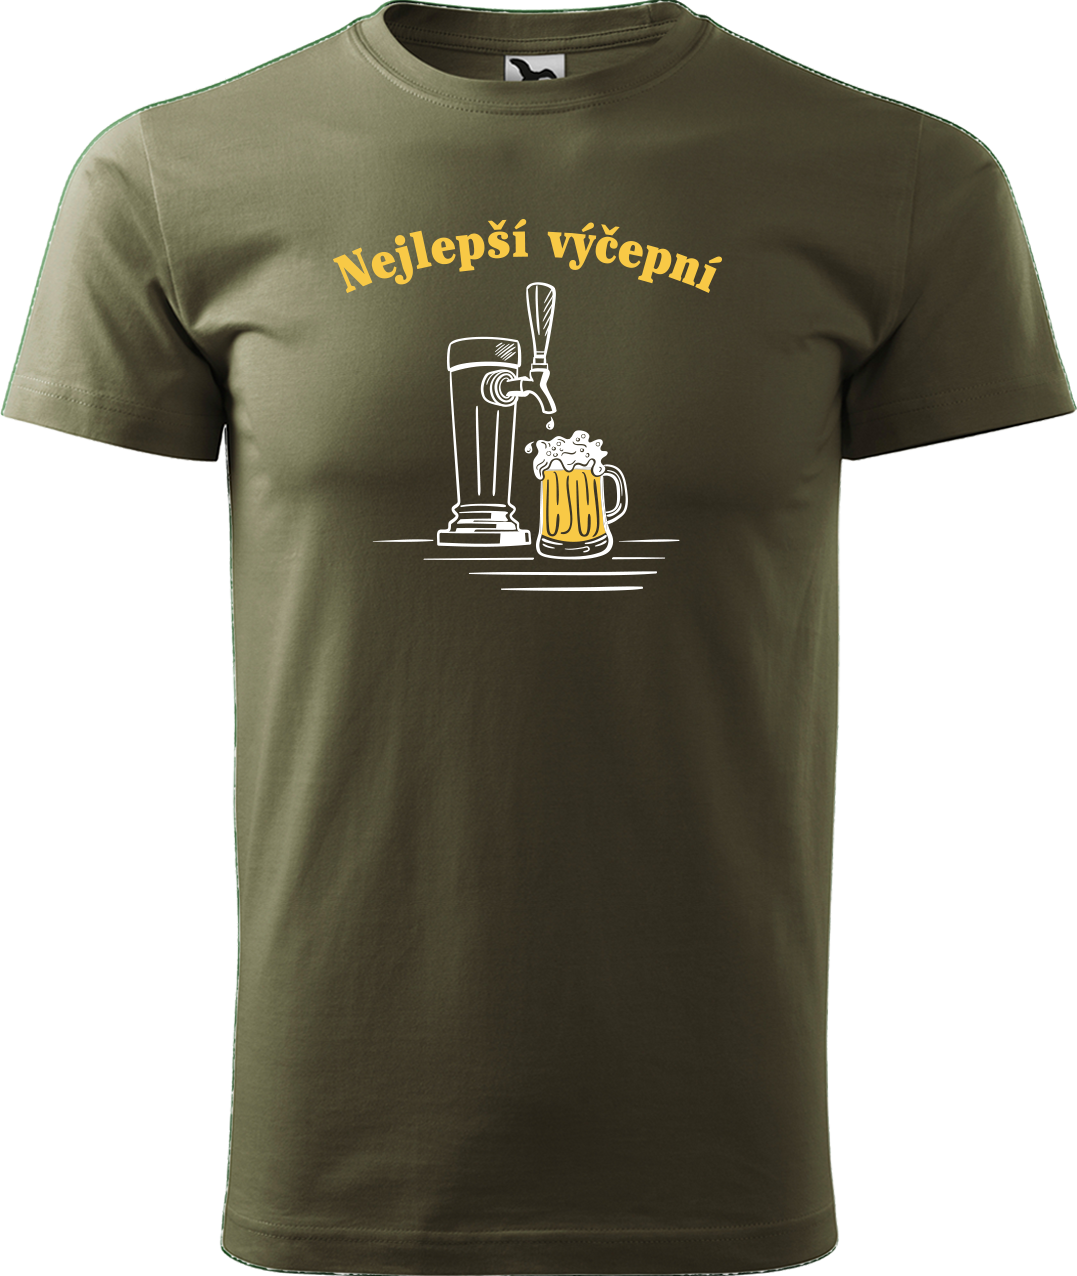 Pivní tričko - Nejlepší hospodskej Velikost: 2XL, Barva: Military (69)